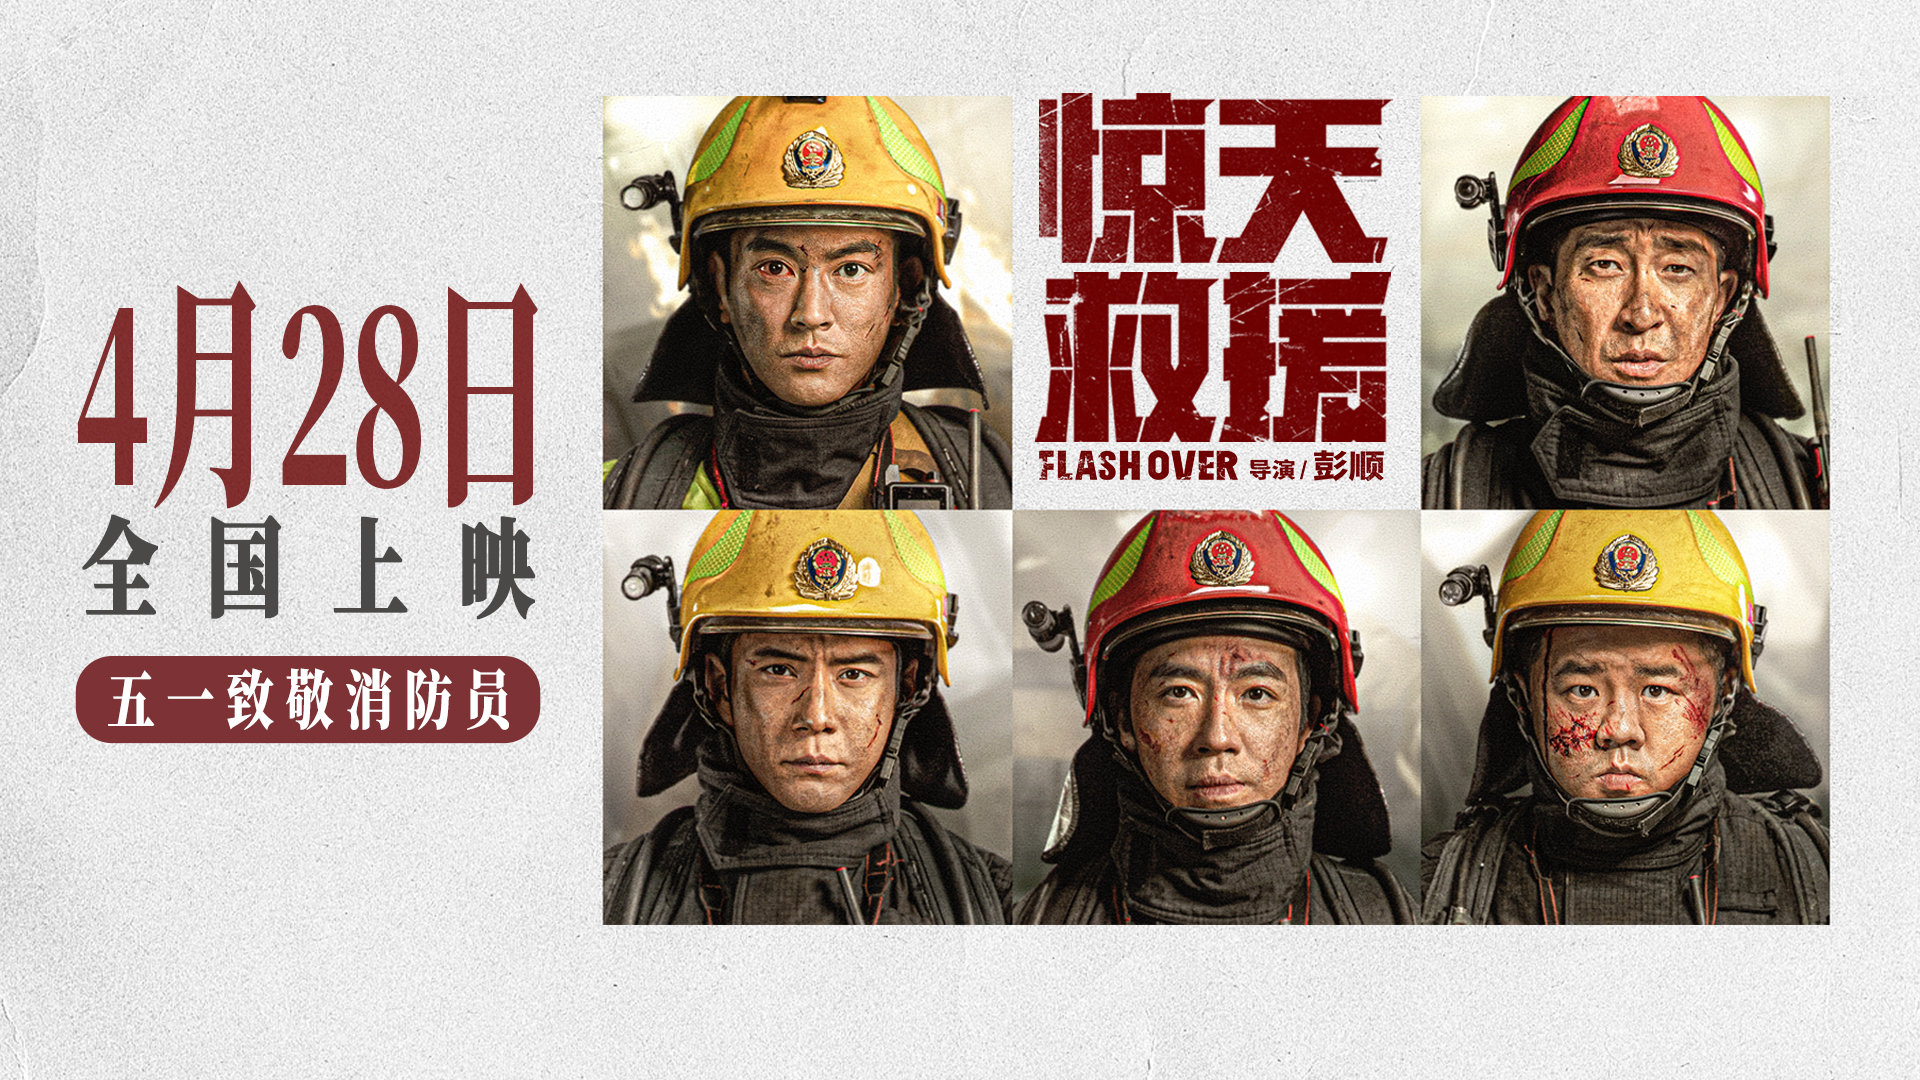 消防救援题材电影《惊天救援》定档4月28日上映